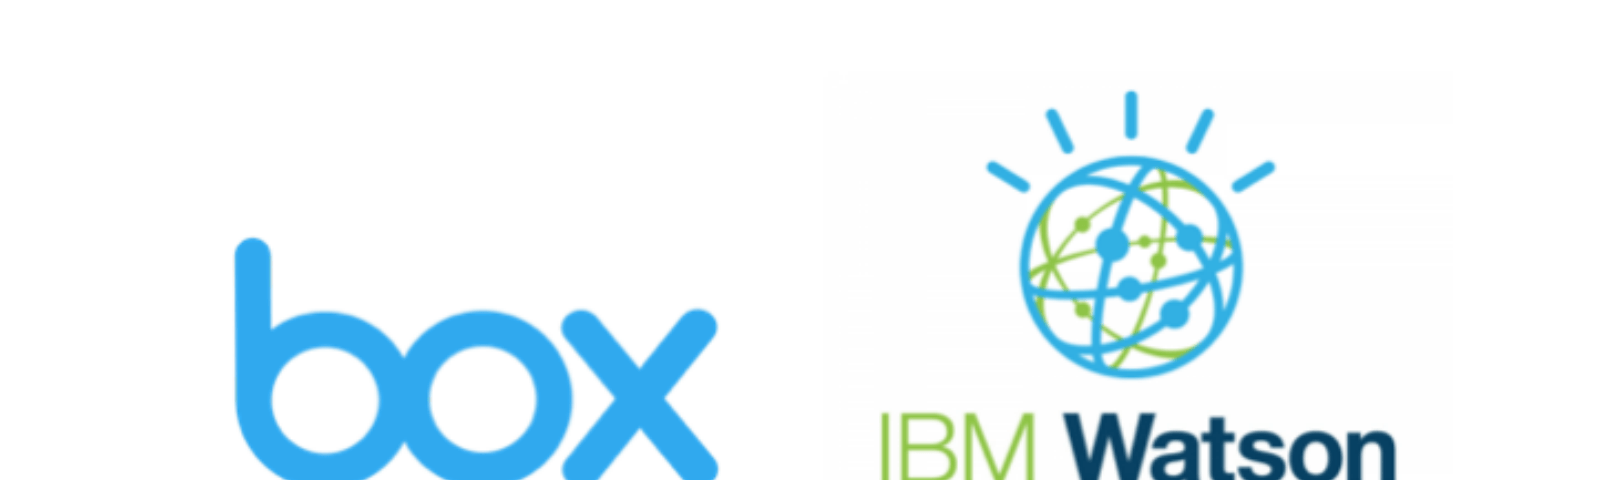 IBM Watson Logo - Ibm Watson – Stamplay